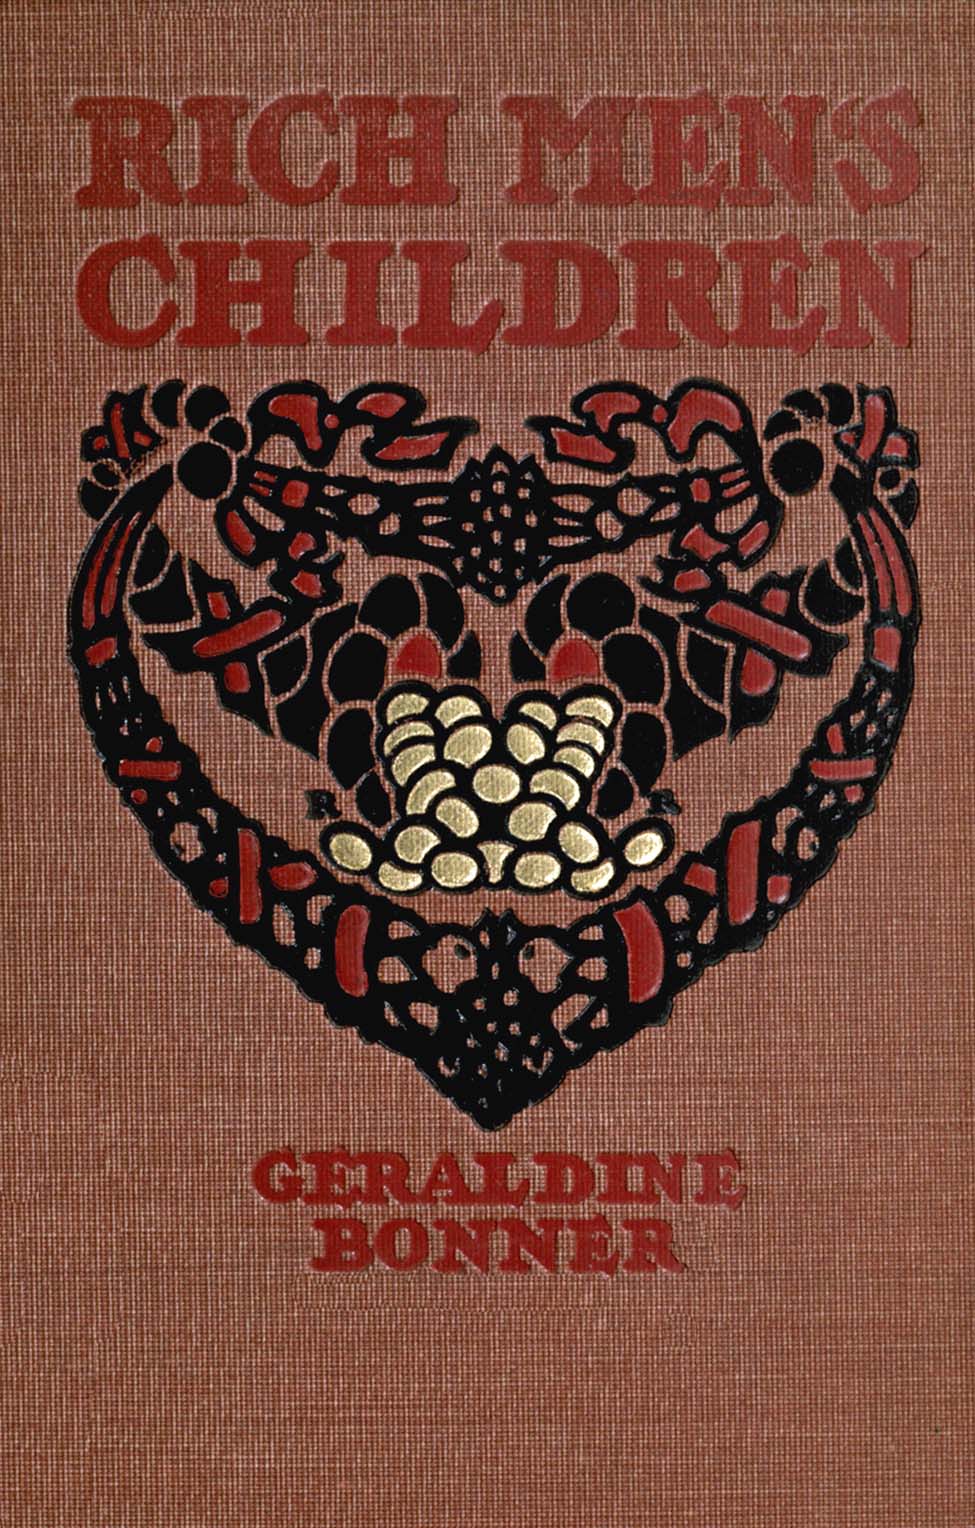 Rich Men's Children, by Geraldine Bonner—A Project Gutenberg eBook